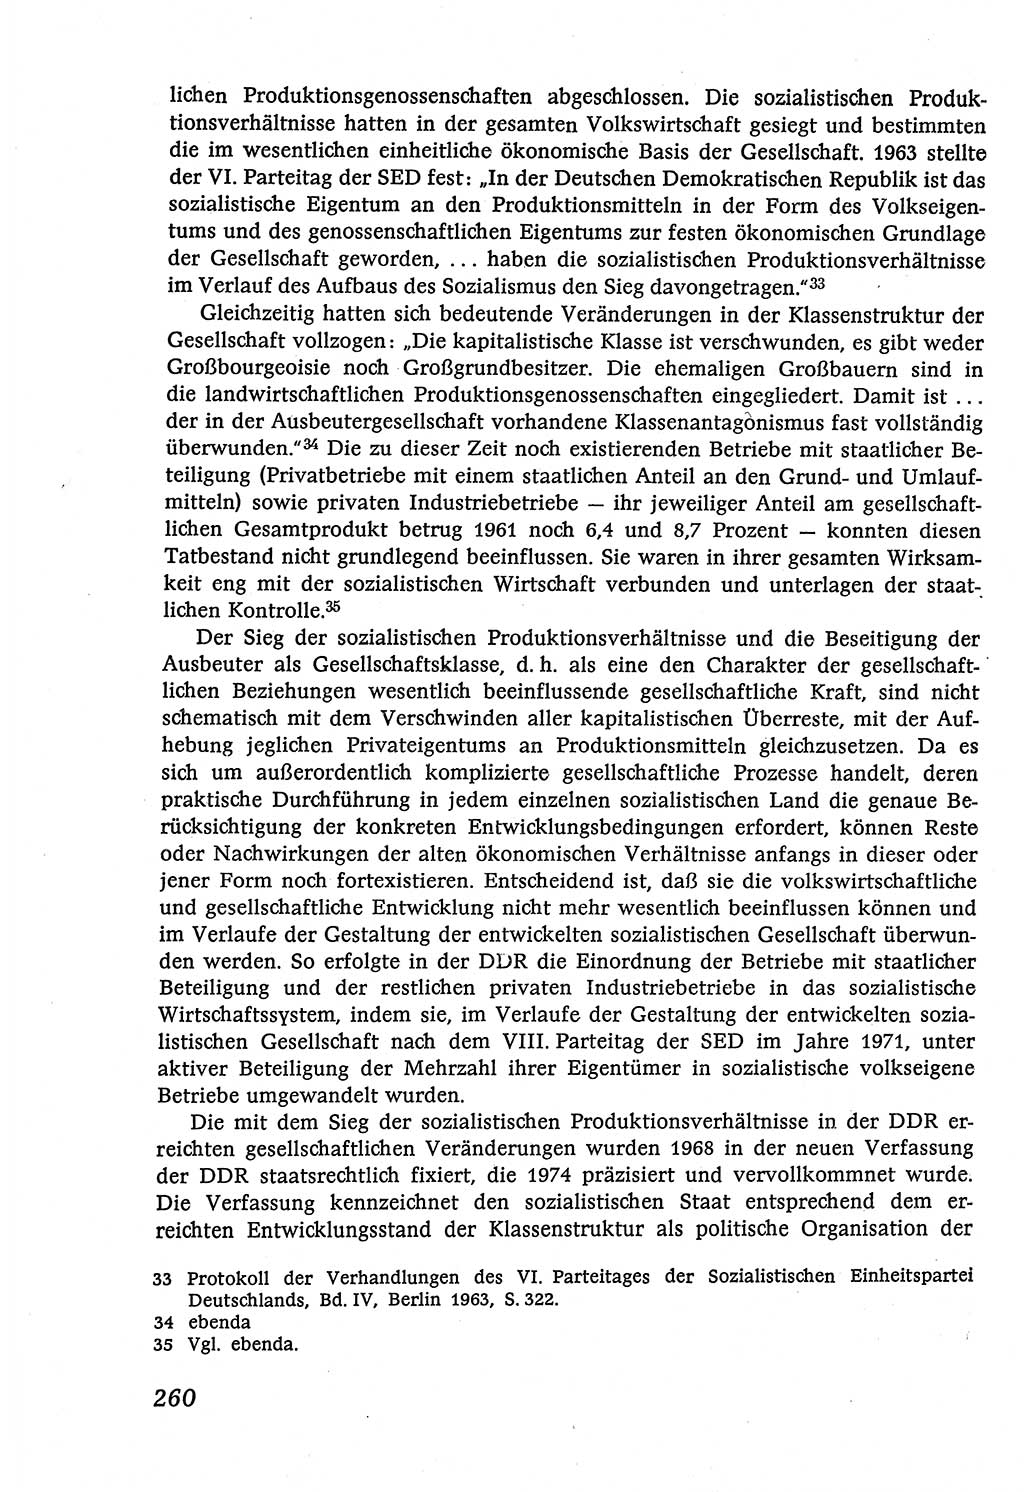 Marxistisch-leninistische (ML) Staats- und Rechtstheorie [Deutsche Demokratische Republik (DDR)], Lehrbuch 1980, Seite 260 (ML St.-R.-Th. DDR Lb. 1980, S. 260)